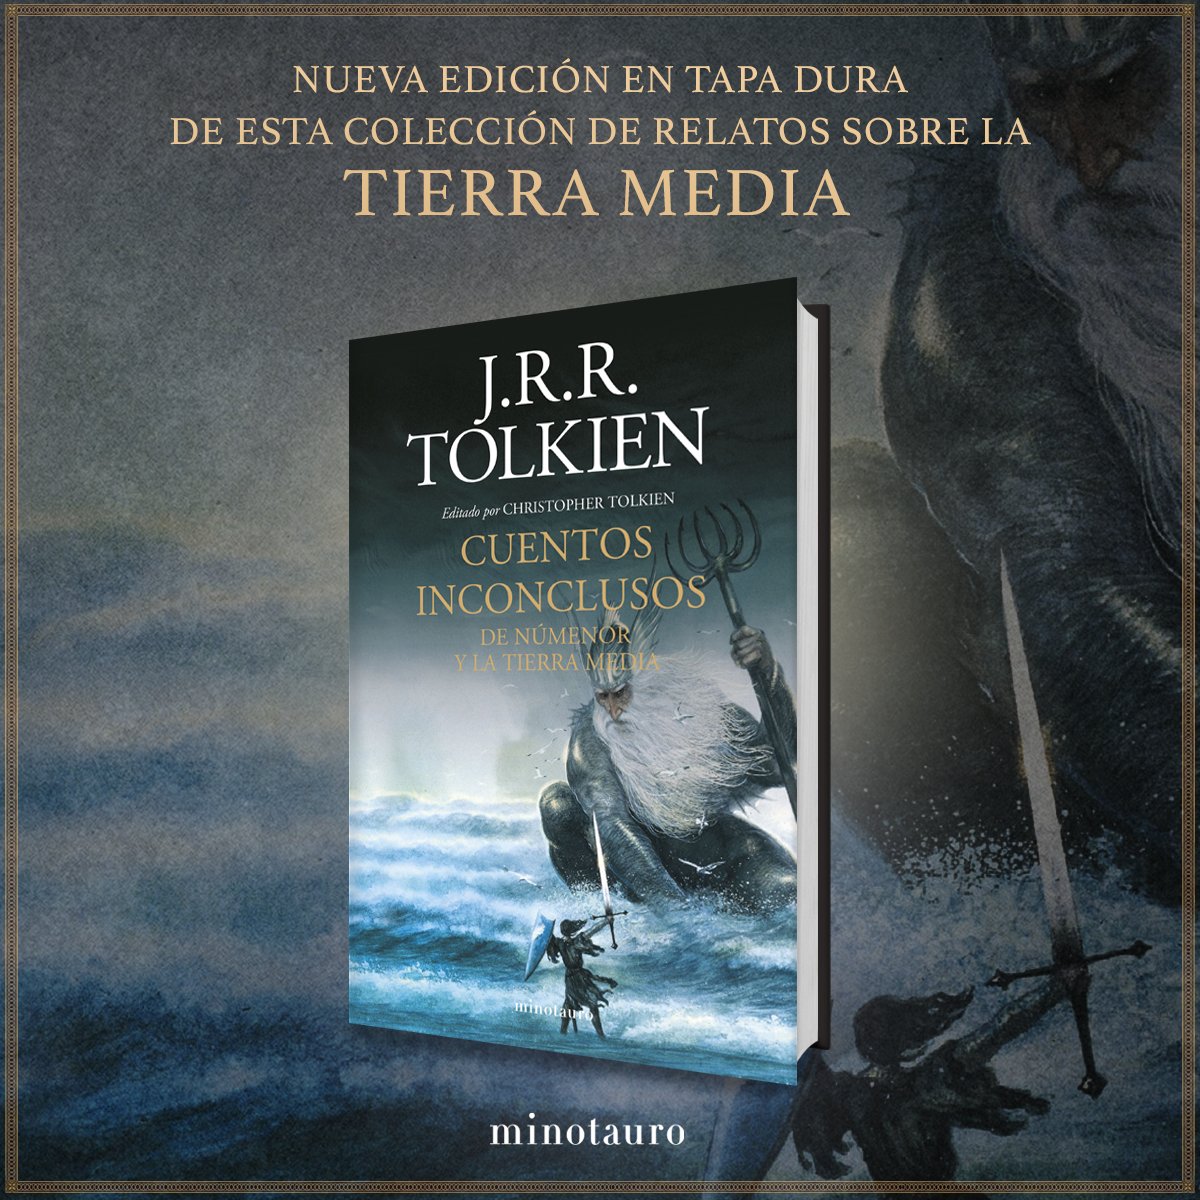 Ediciones Minotauro on Twitter: "#YaEnLibrerías una nueva edición con diseño renovado de cubierta de #CuentosInconclusos, de J. R. R. #Tolkien. Una colección única relatos sobre la historia de la #TierraMedia, desde